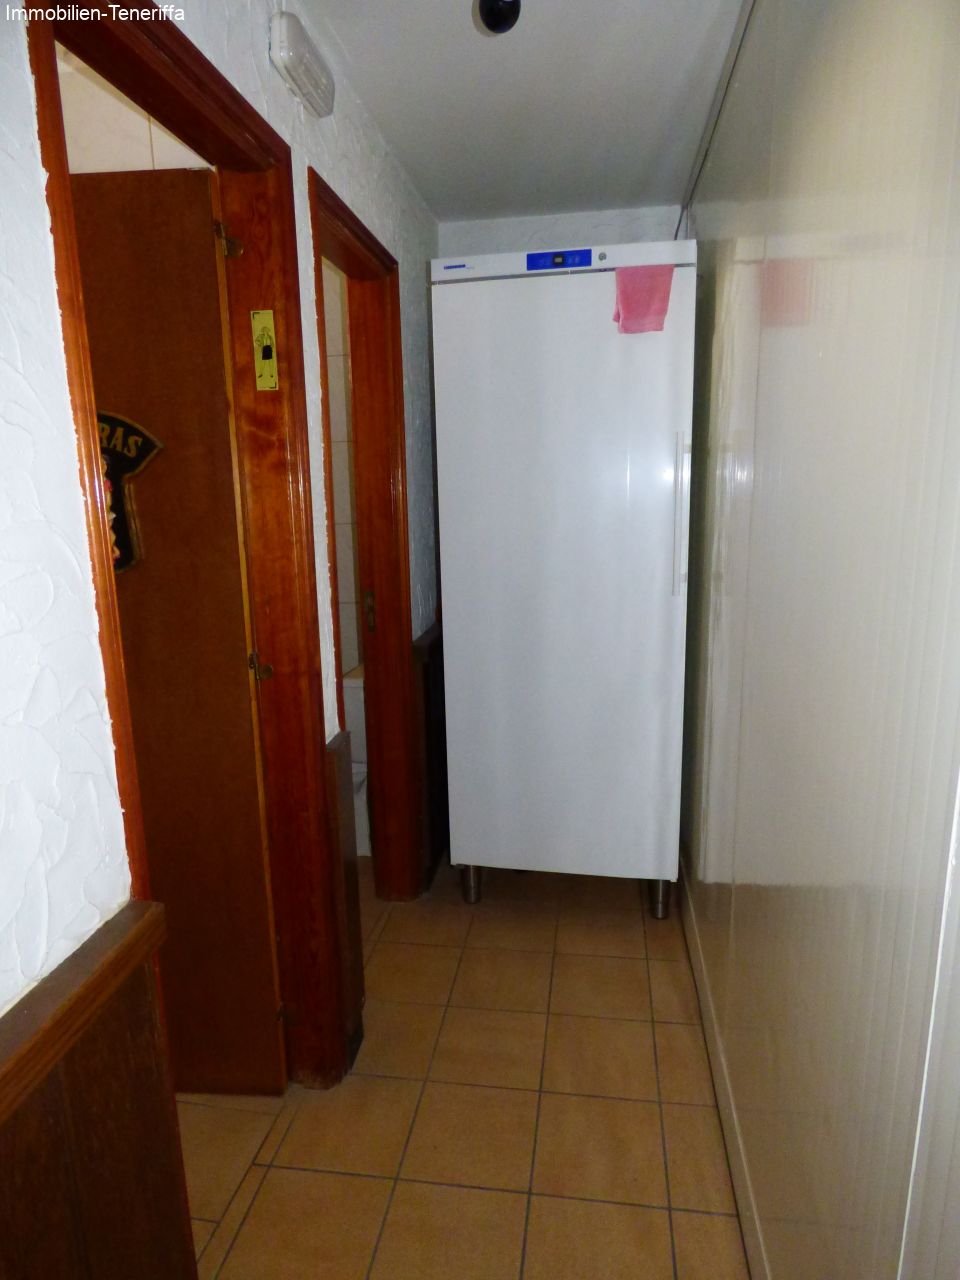 Refrigerador adicional con cerradura